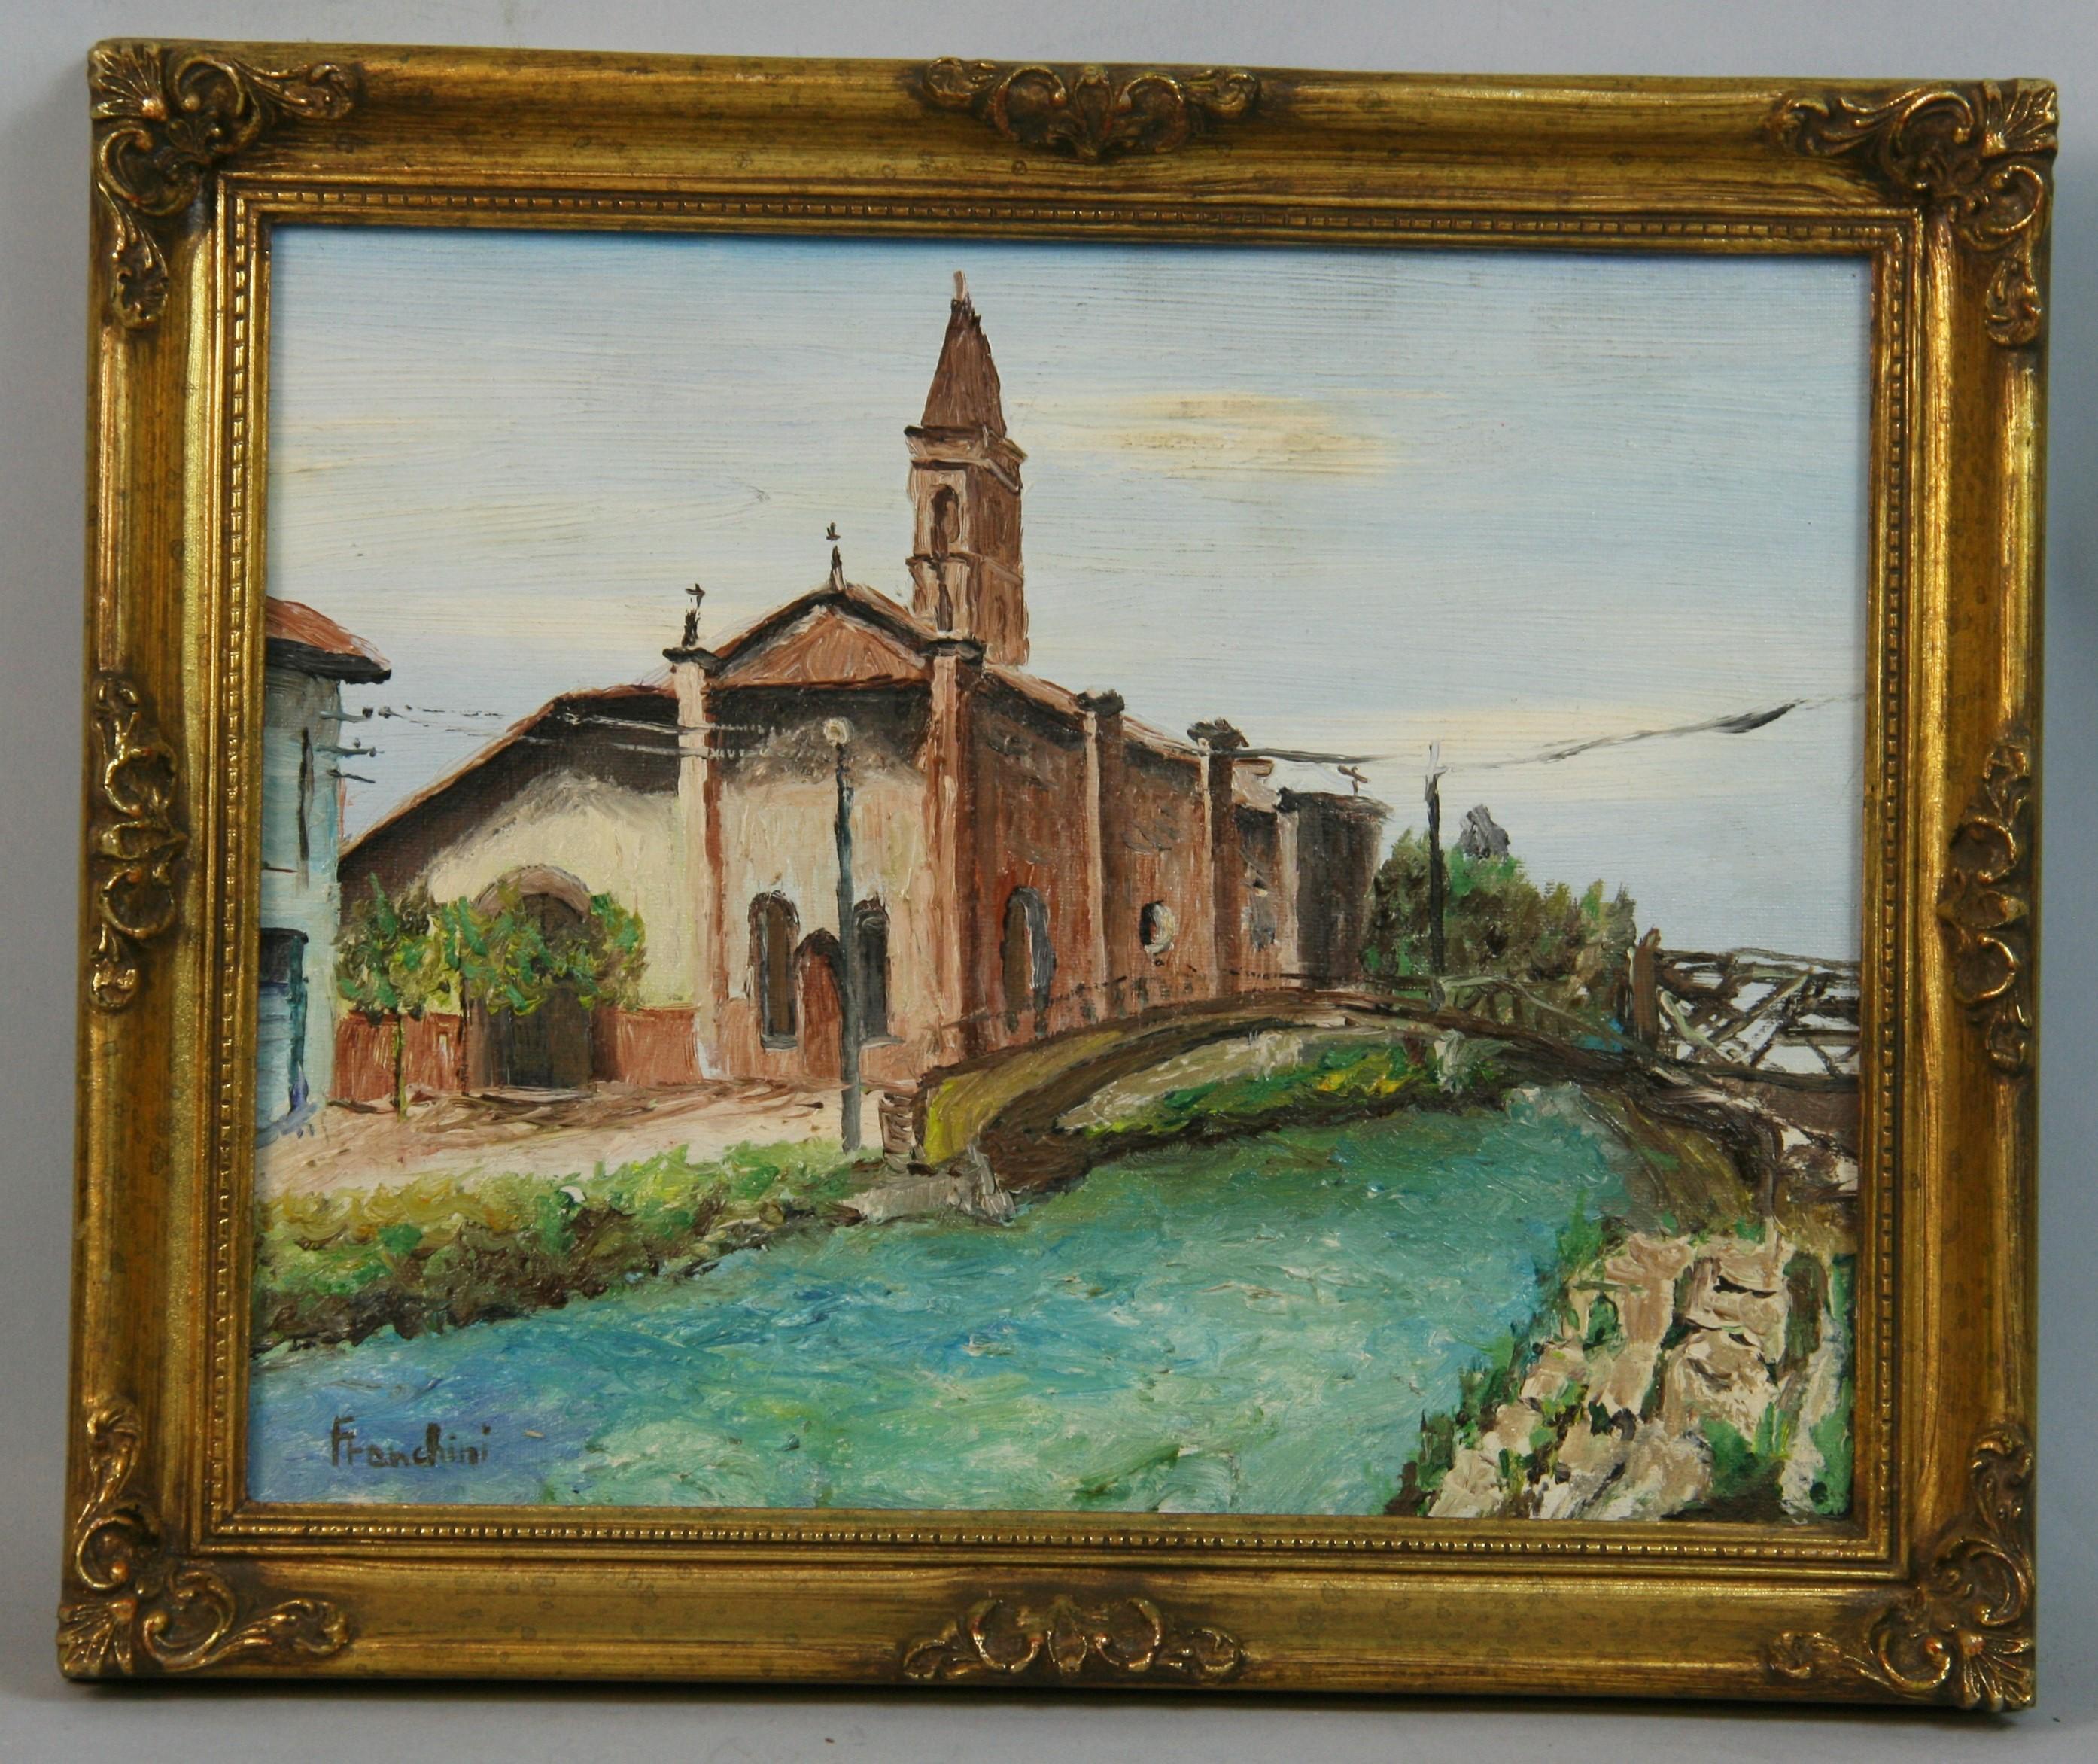 Landscape Painting Unknown - Vintage Italian Bridge Cross to a Village Church par Franchini 1980